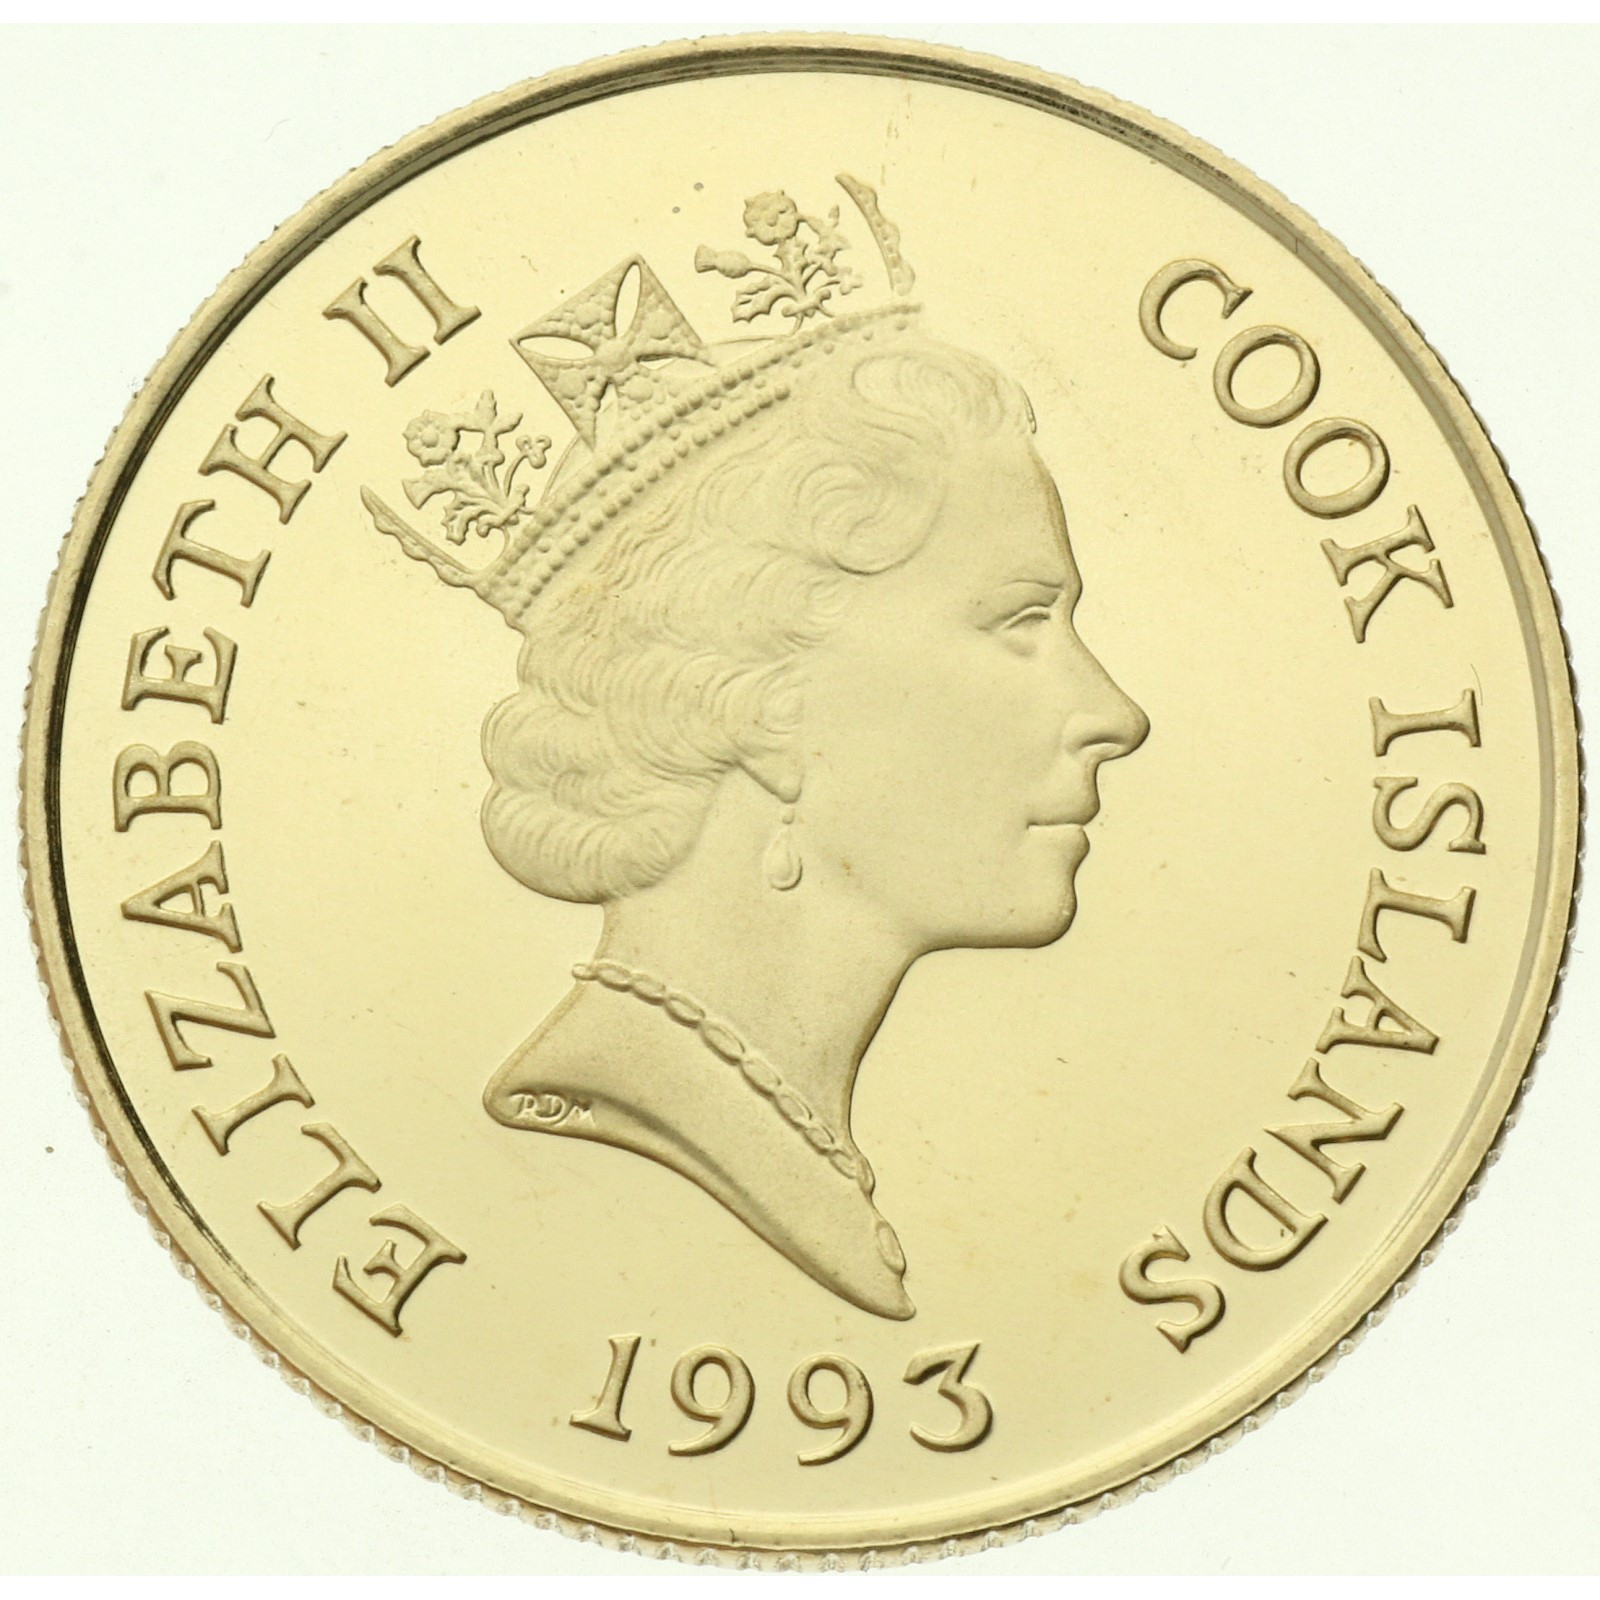 Cook Islands - 50 Dollars - 1993 -  Elizabeth II - 500 years of America